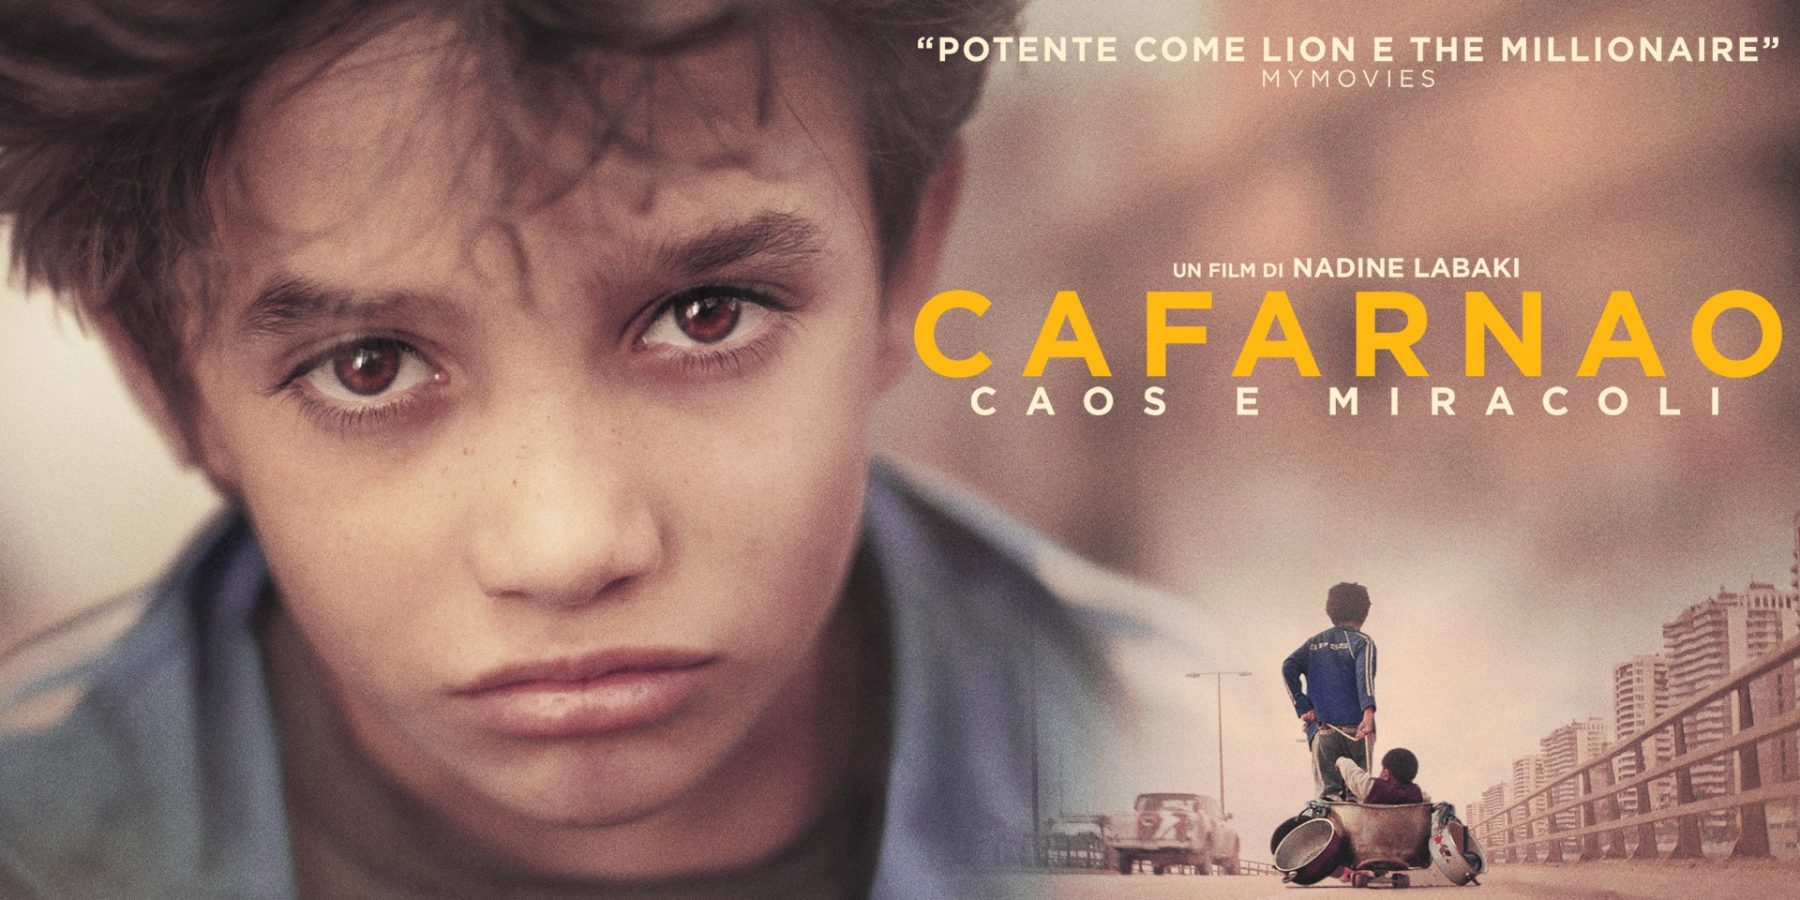 Pantelleria Cinema: in programmazione questo weekend "Cafarnao"